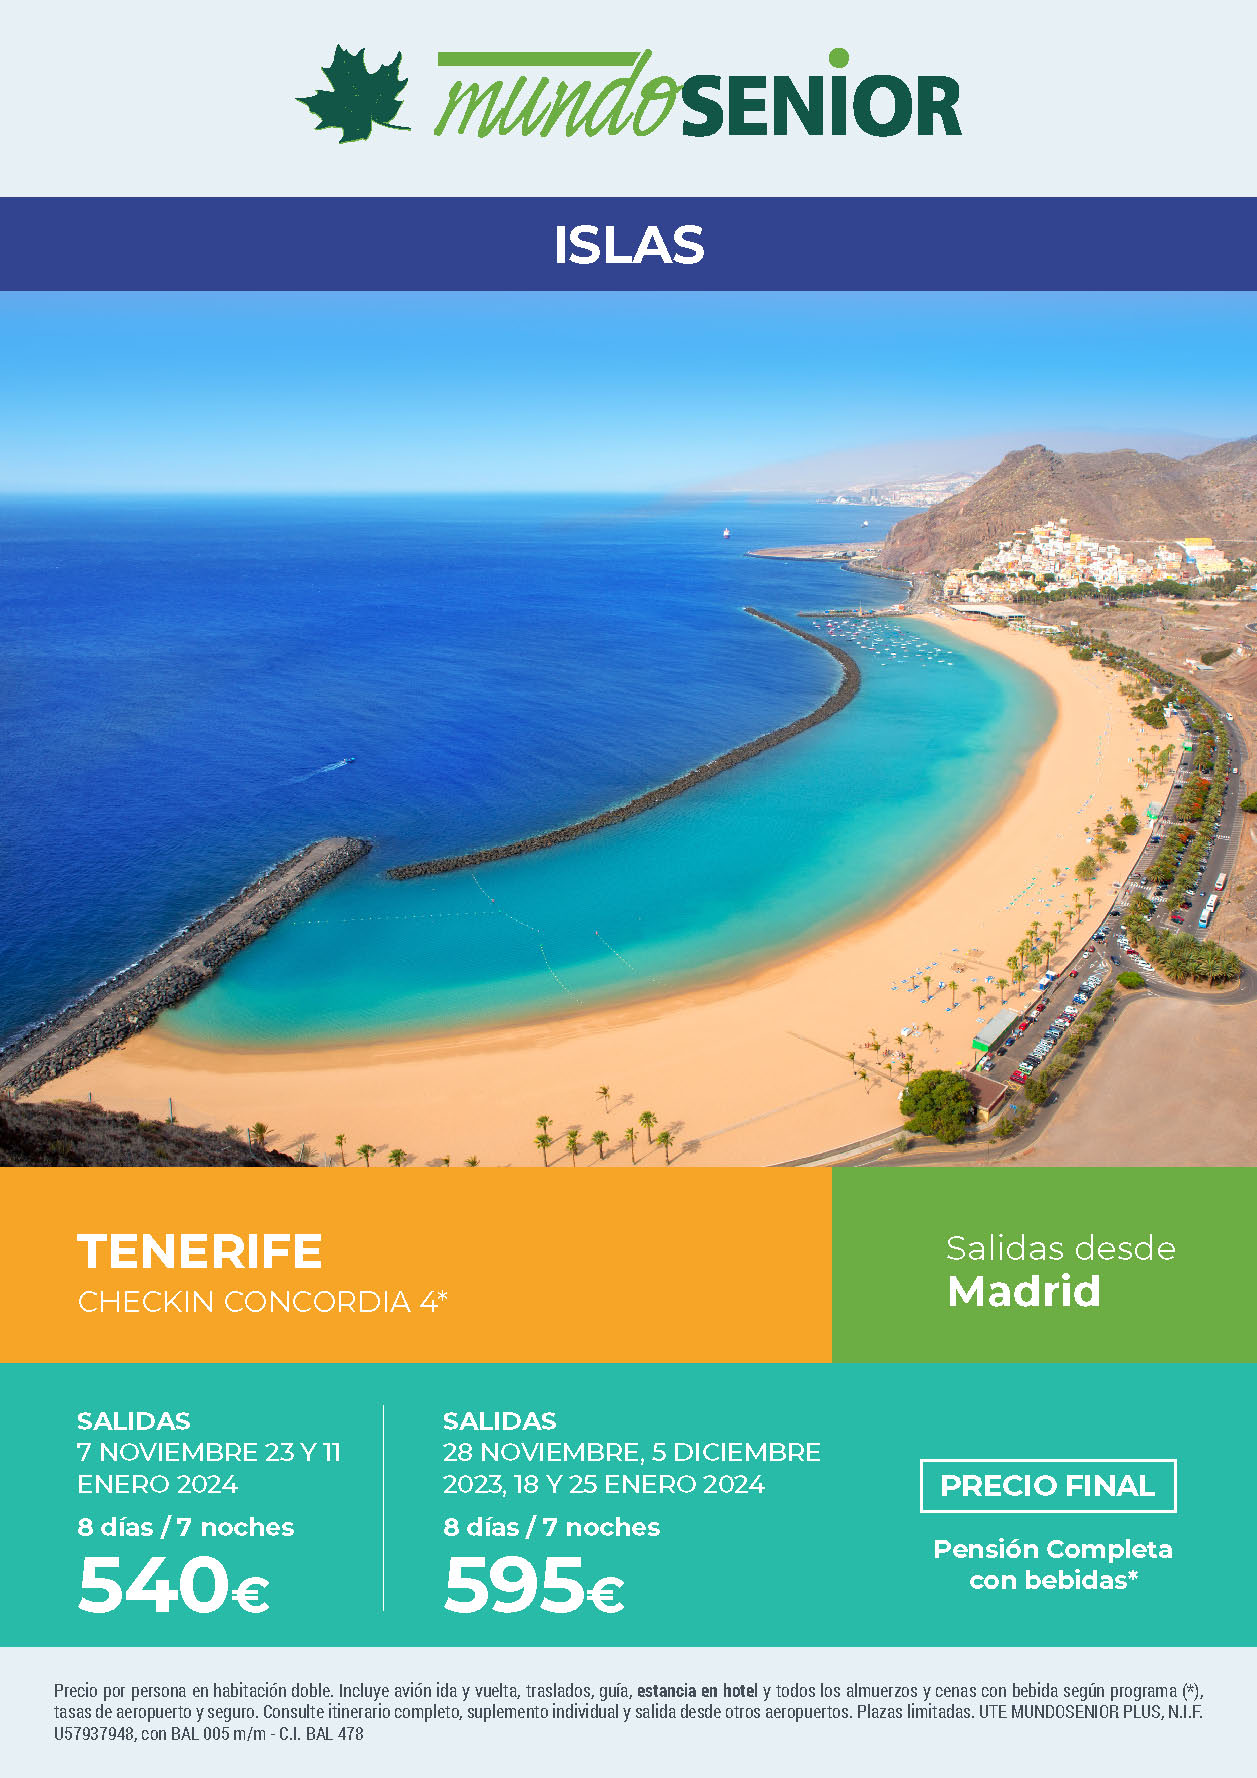 Oferta Mundo Senior Estancia en Tenerife 8 dias hotel 4 estrellas pension completa salidas noviembre diciembre 2023 enero 2024 desde Madrid